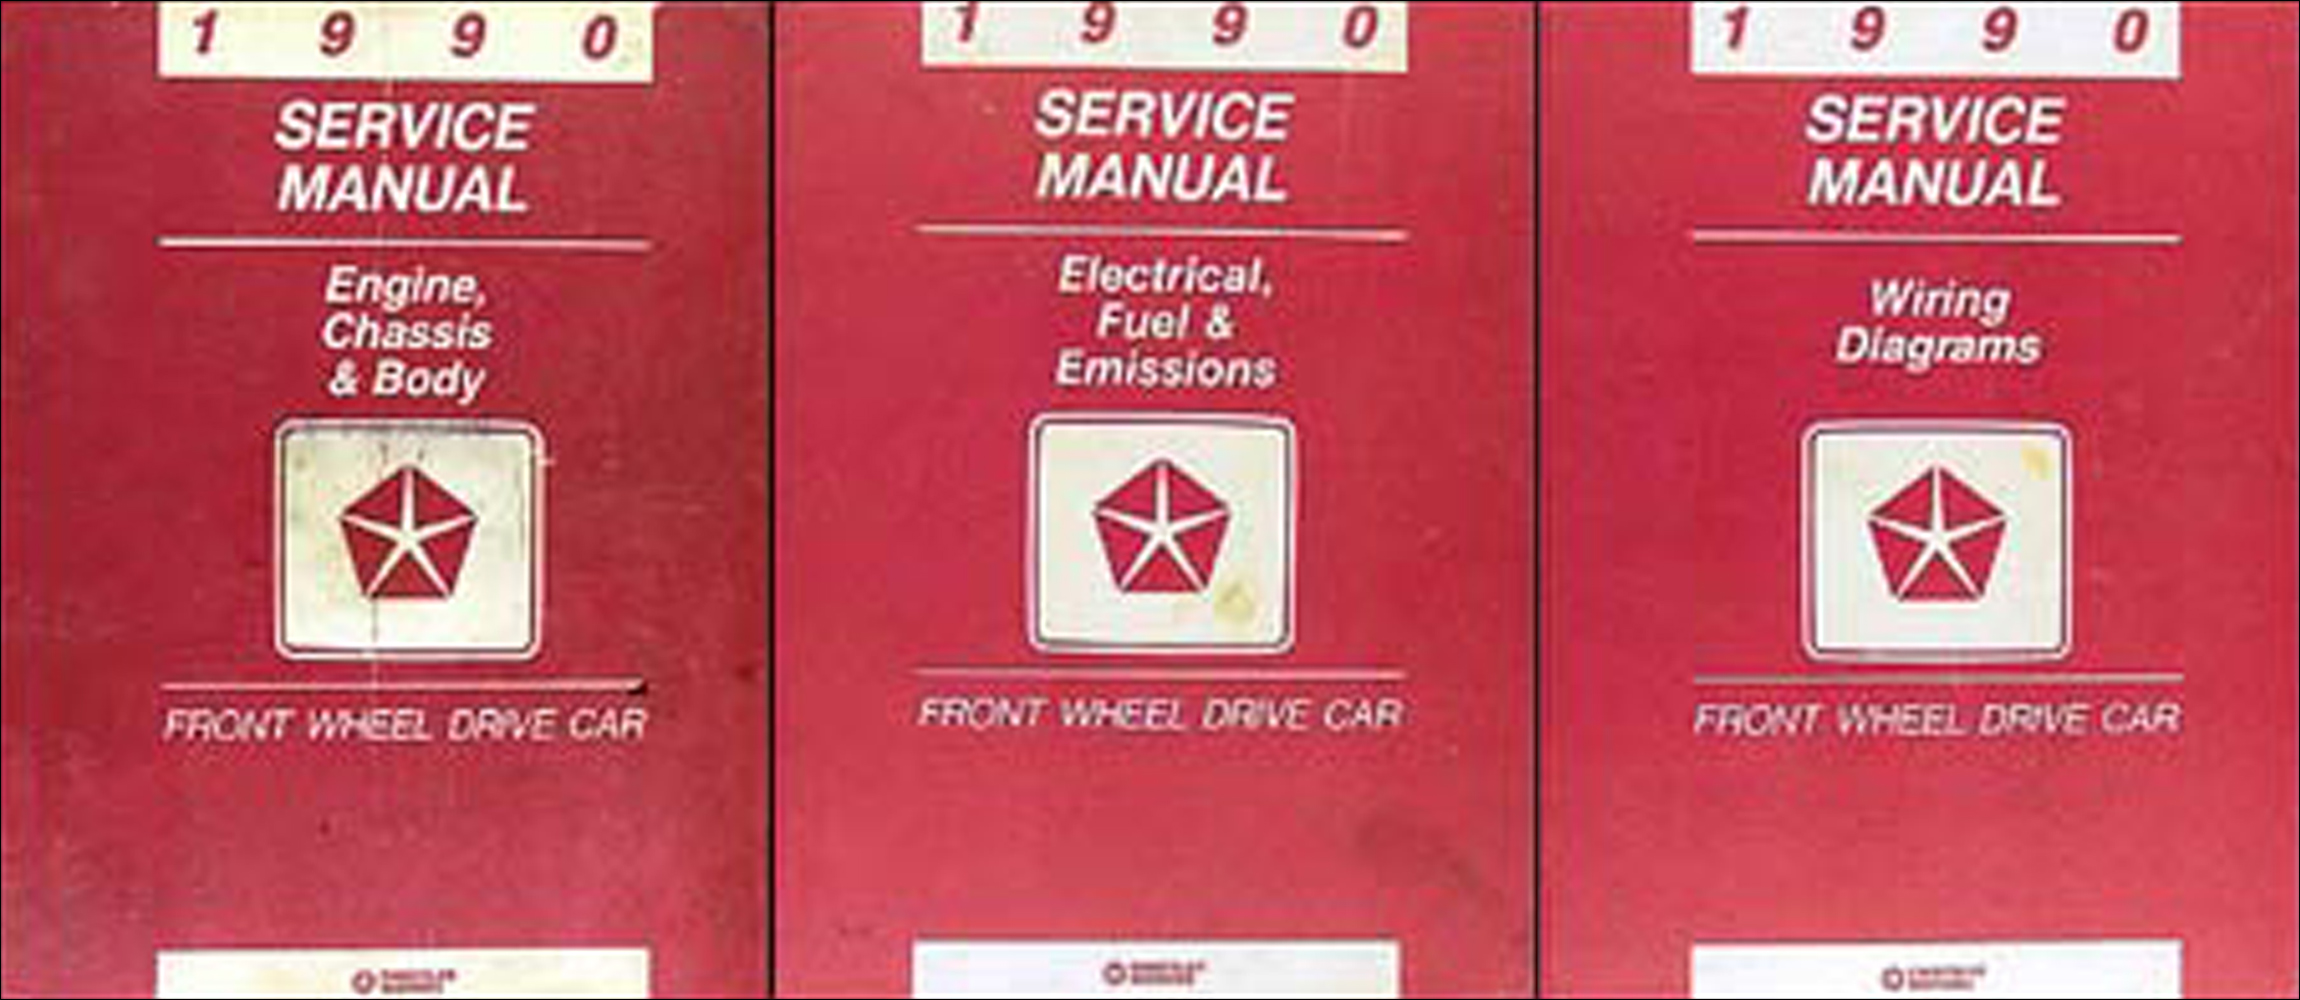 1990 MoPar FWD Car Repair Manual 3 Vol Set